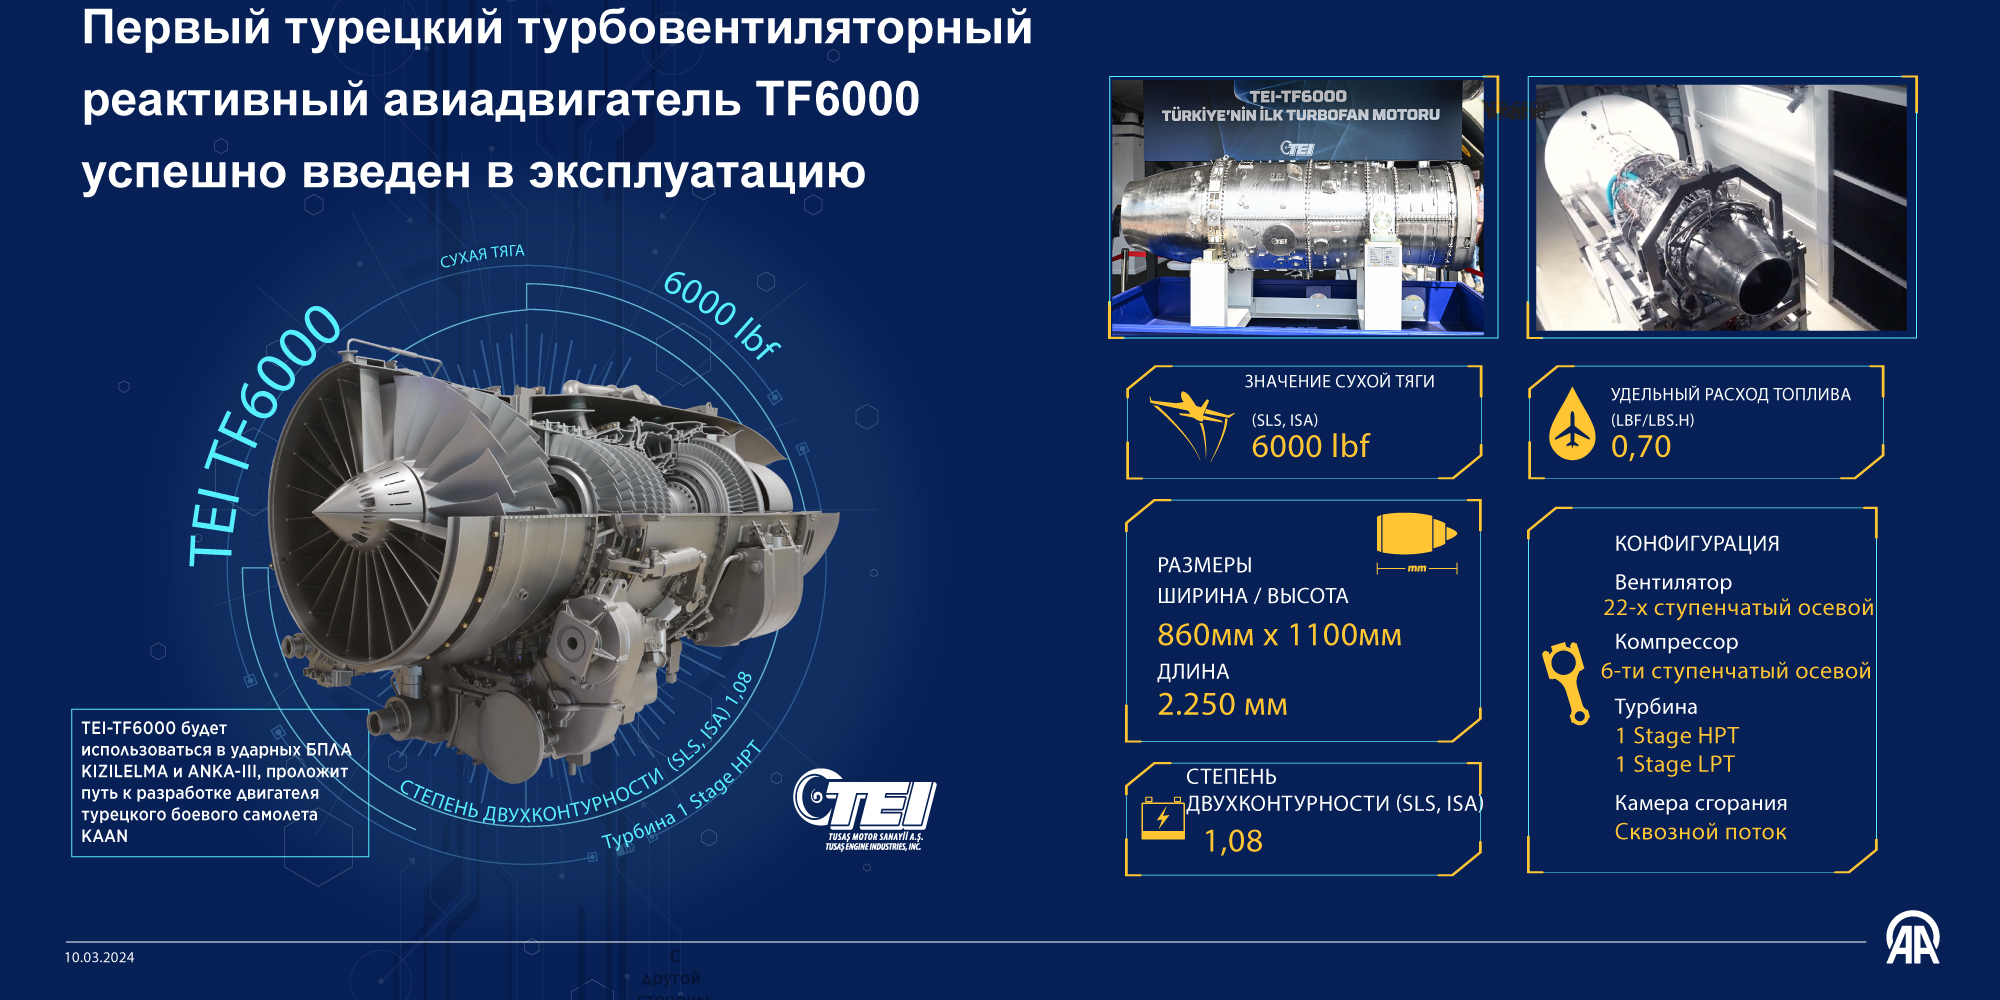 Первый турецкий турбовентиляторный реактивный авиадвигатель TF6000 успешно введен в эксплуатацию